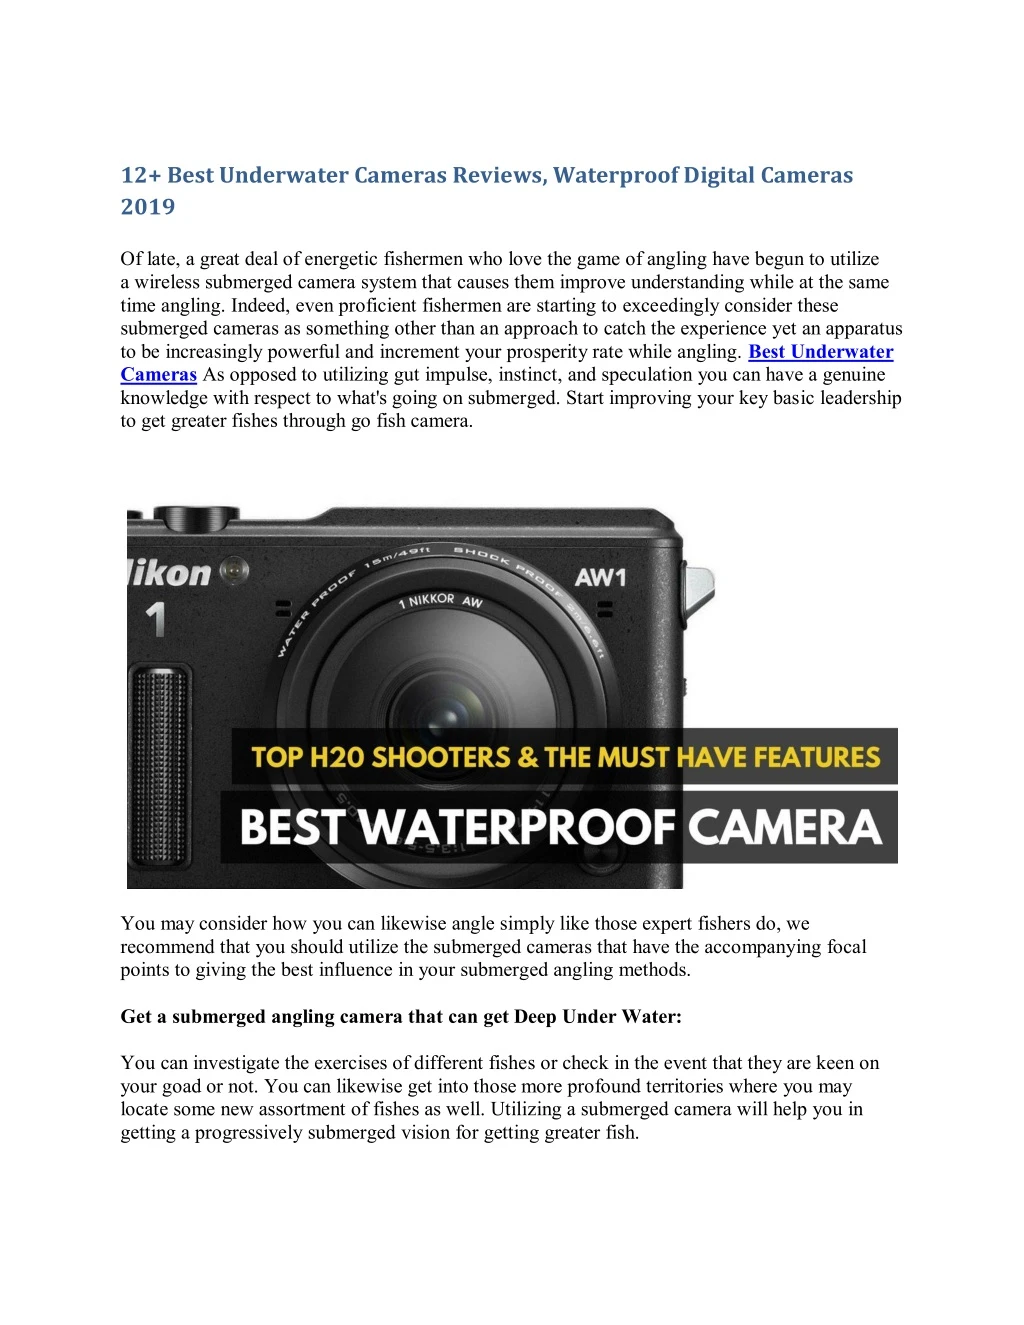 12 best underwater cameras reviews waterproof